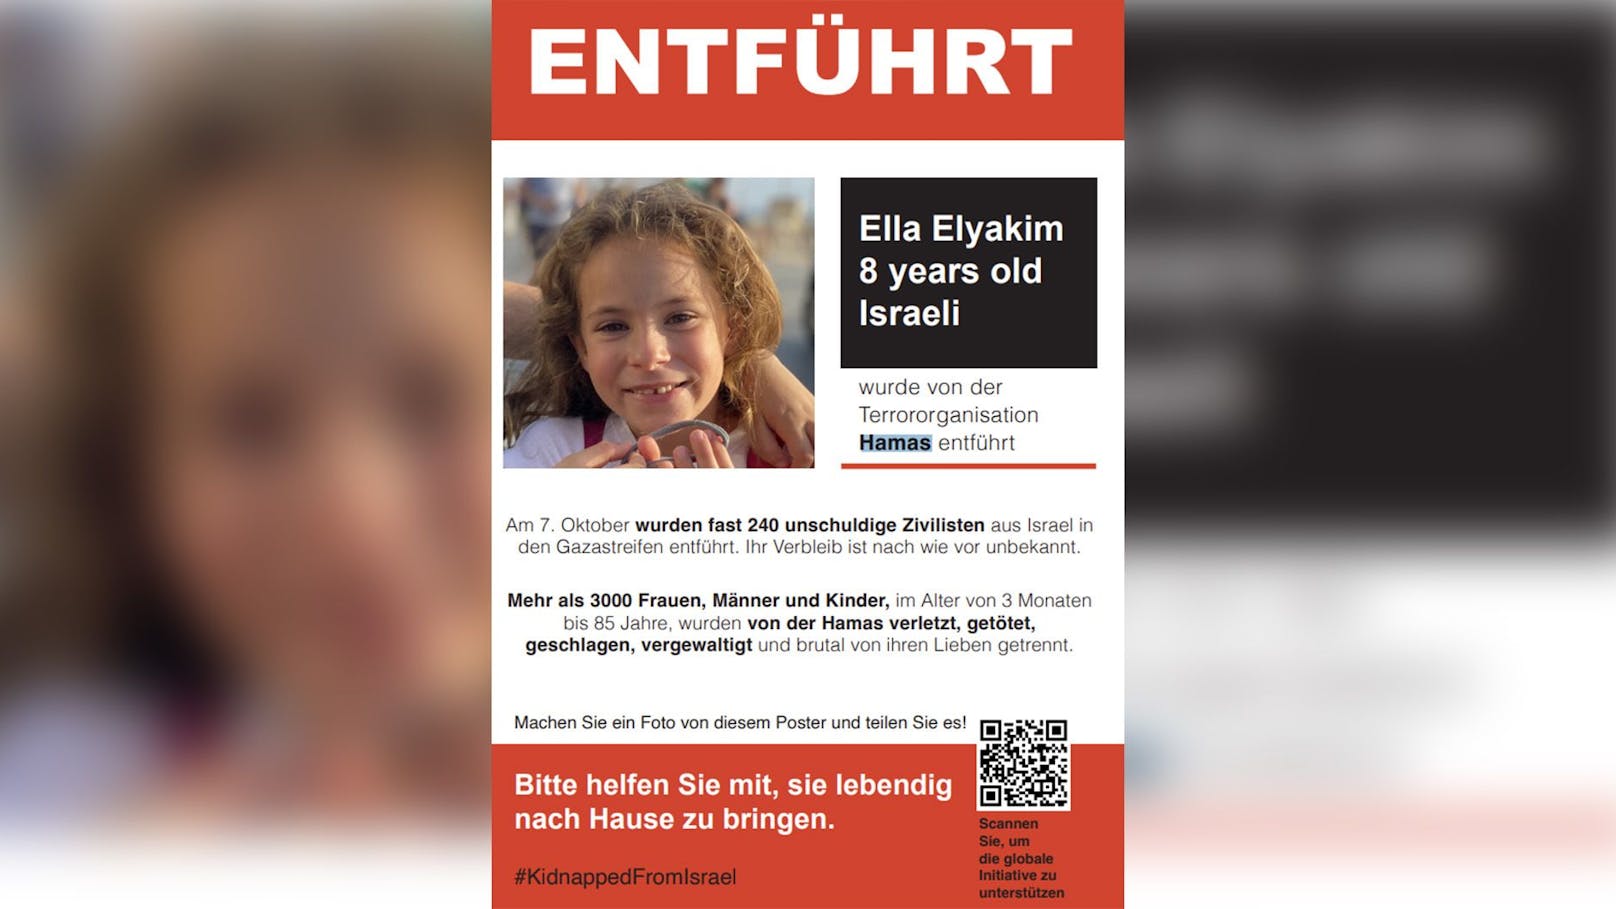 Die 8-jährige Ella ist eines der entführten Kinder aus Israel.